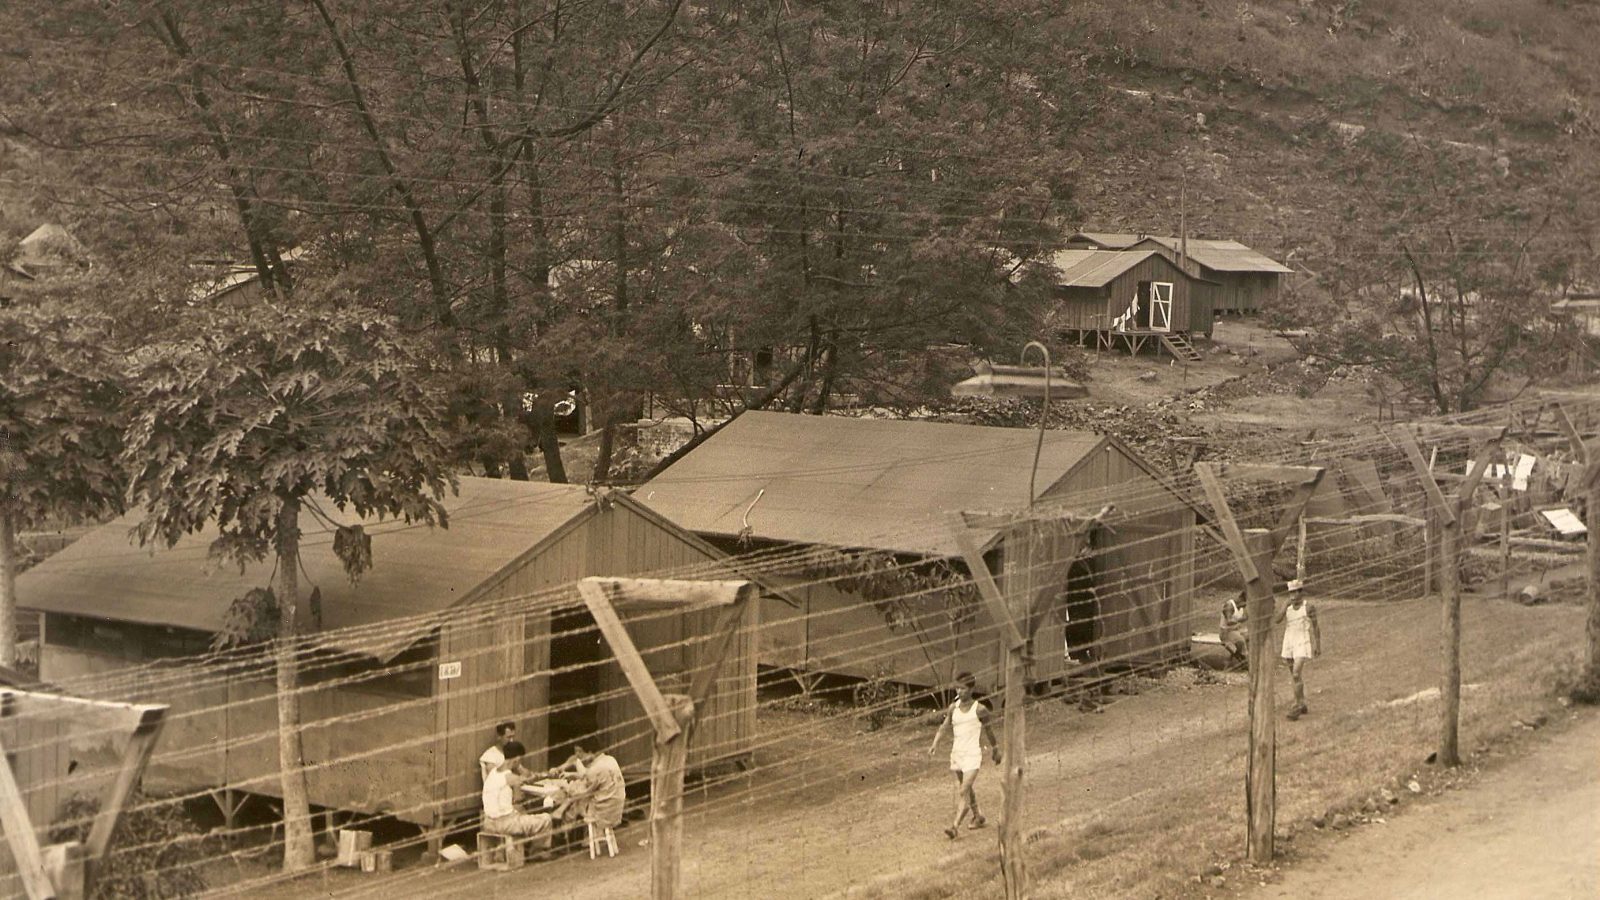 “地獄谷”と呼ばれたハワイの「日系人強制収容所」が歴史から忘れられた理由 | 根深く残る「帝国主義」と「真珠湾」の記憶